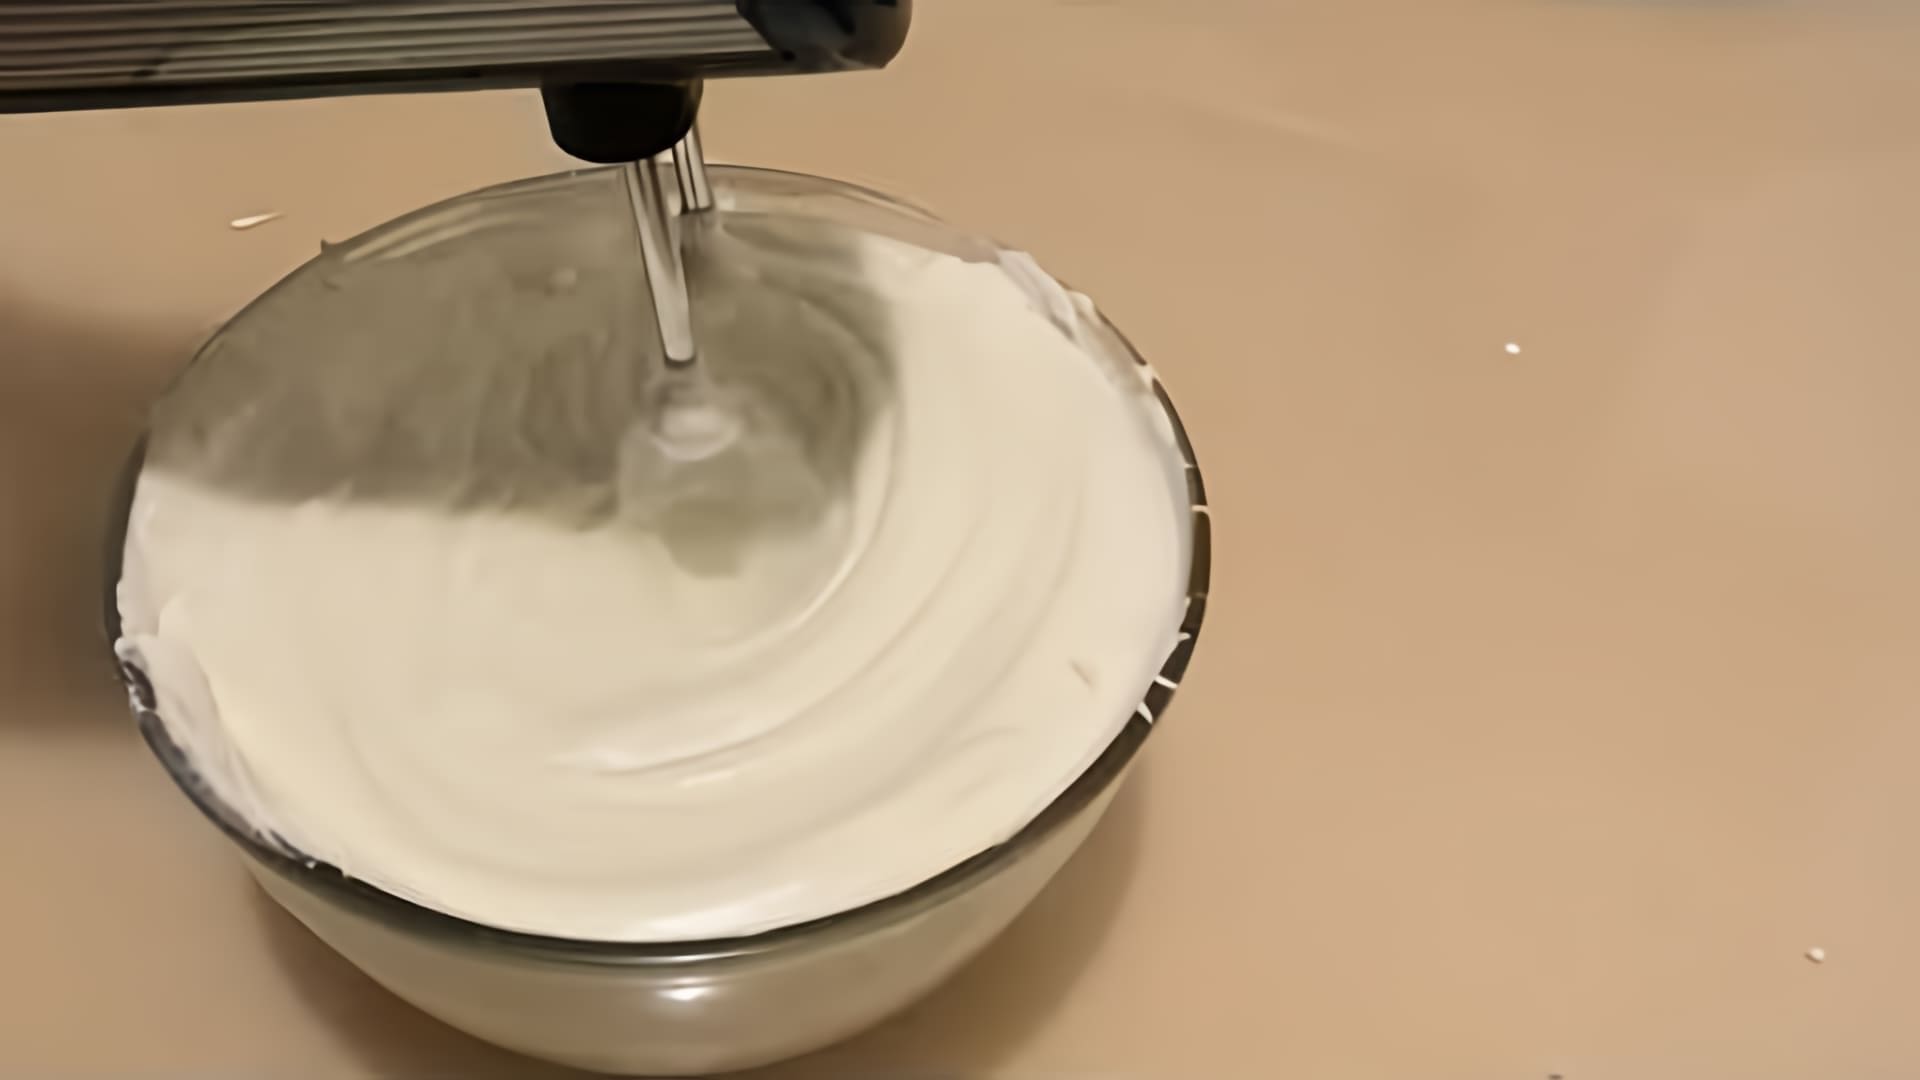 В этом видео демонстрируется процесс приготовления крема из сливок и сгущенного молока